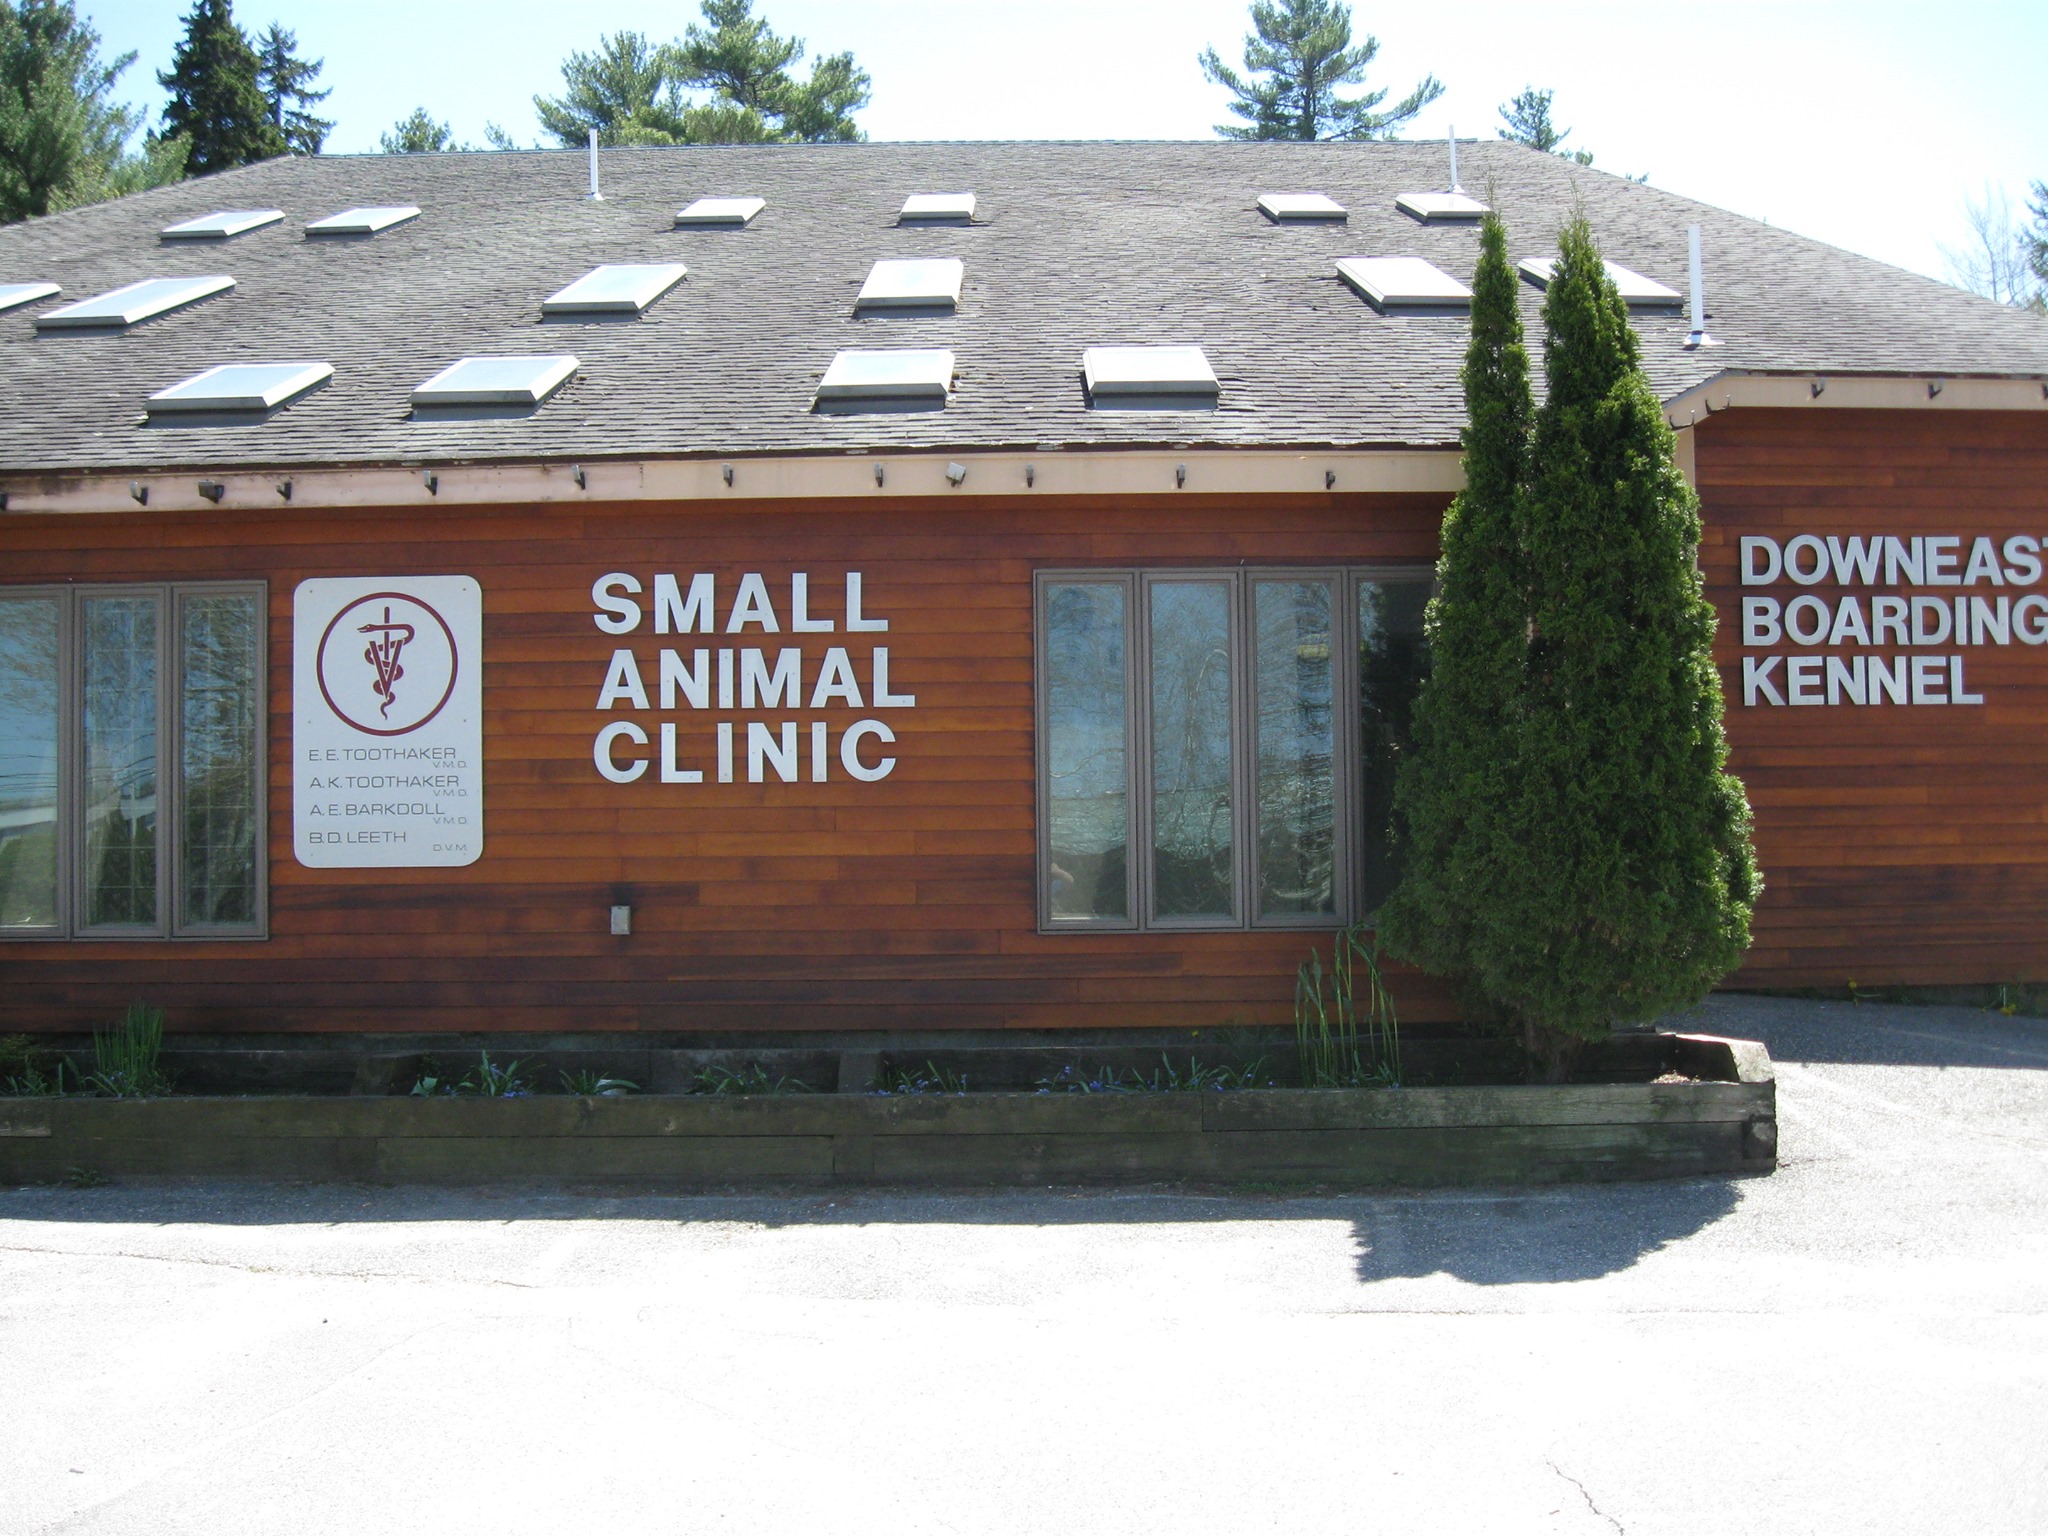 Small Animal Clinic: Toothbaker Eugene E DVM